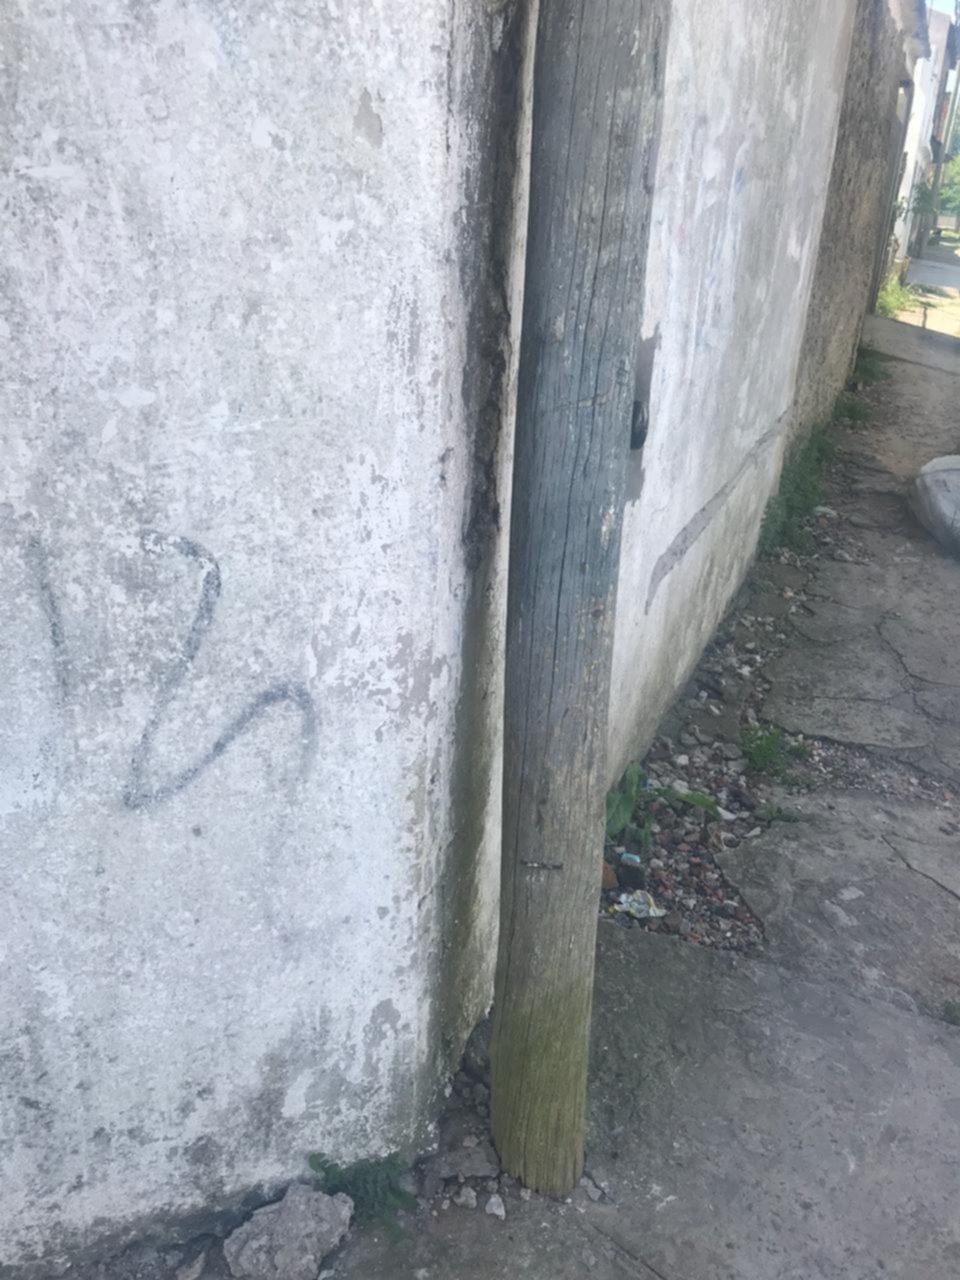 Peligro por un poste “pegado a la pared” en 166 y 82